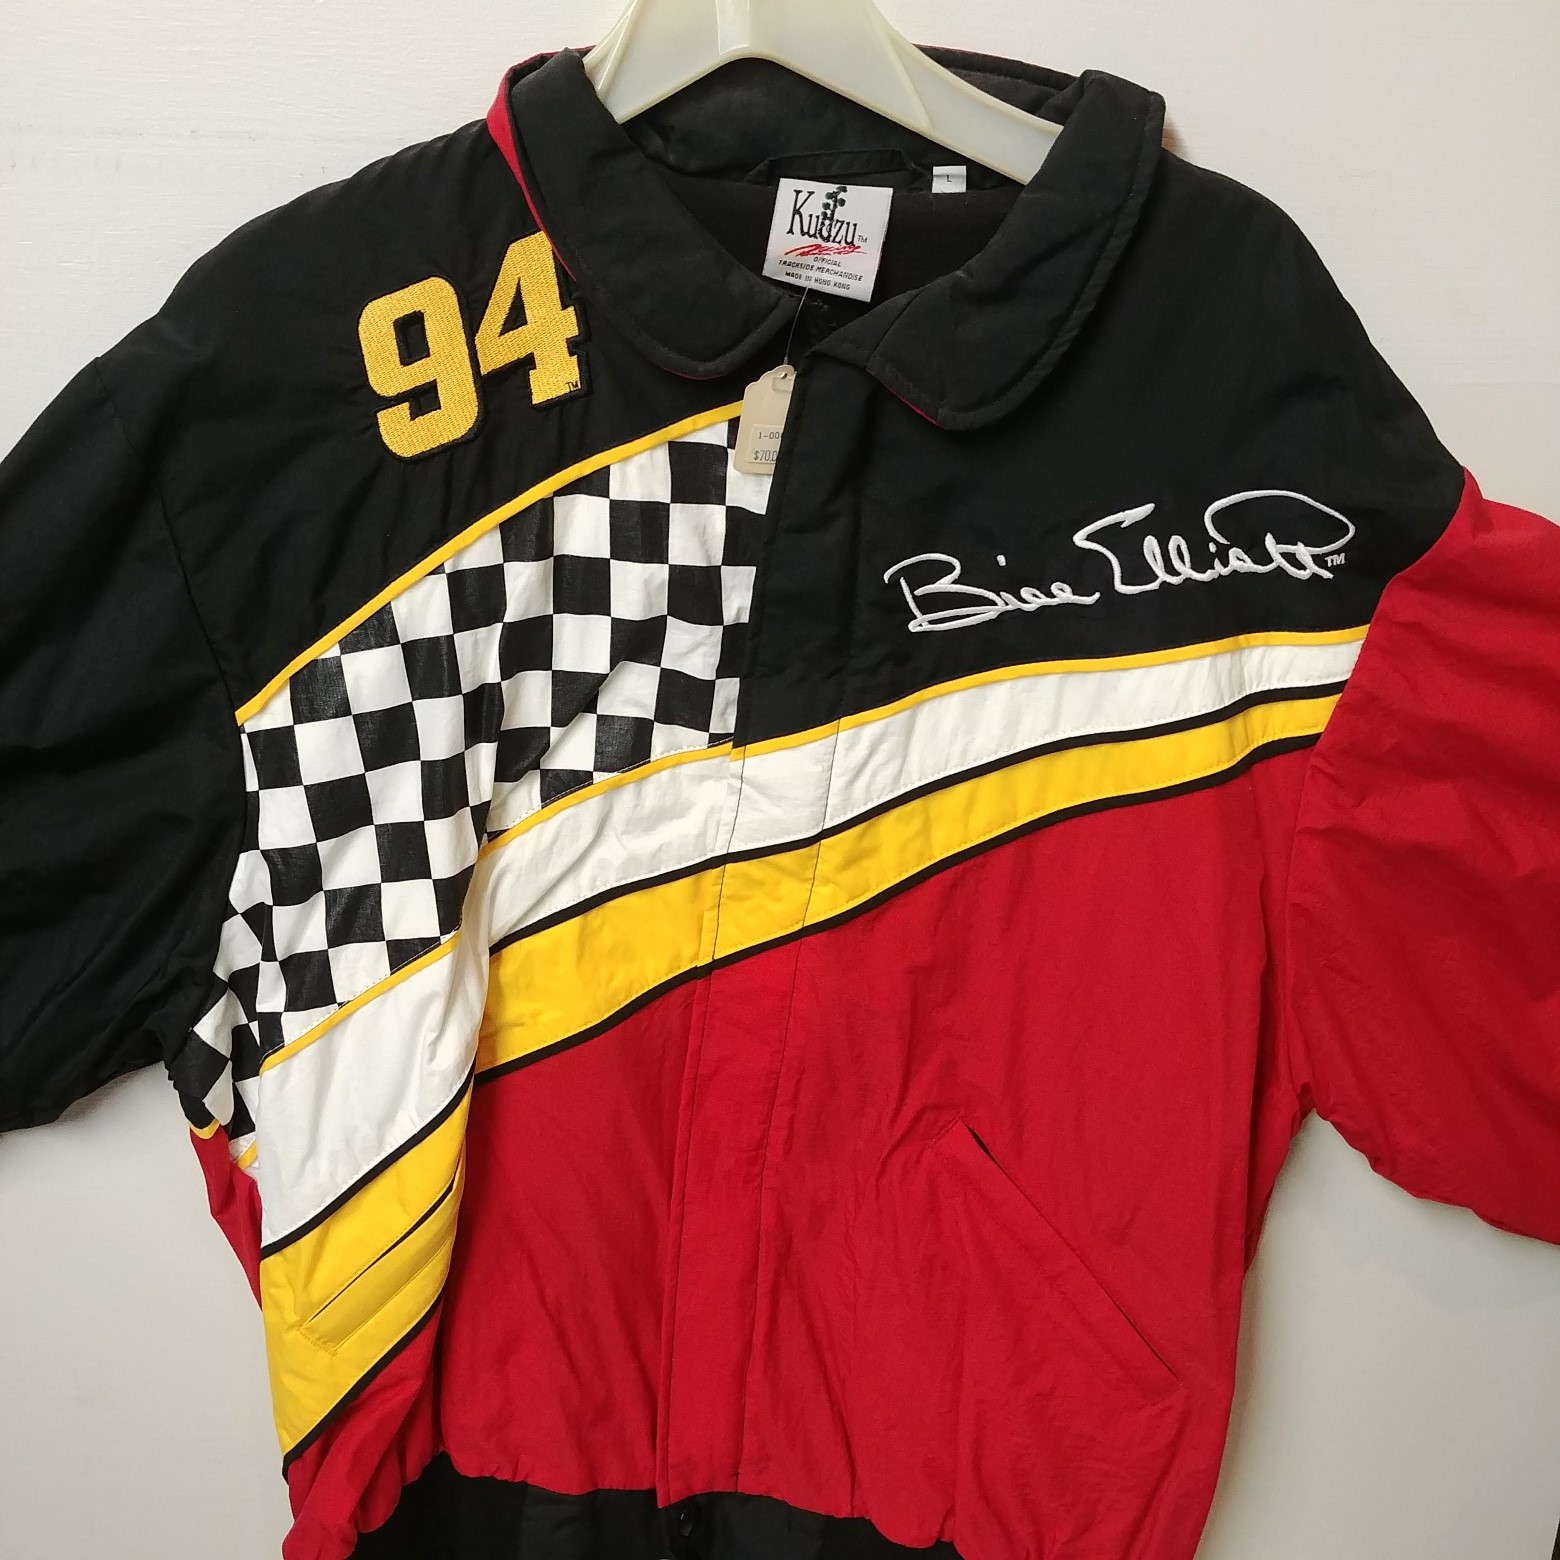 1997 Bill Elliott McDonald's Racing Team jacket